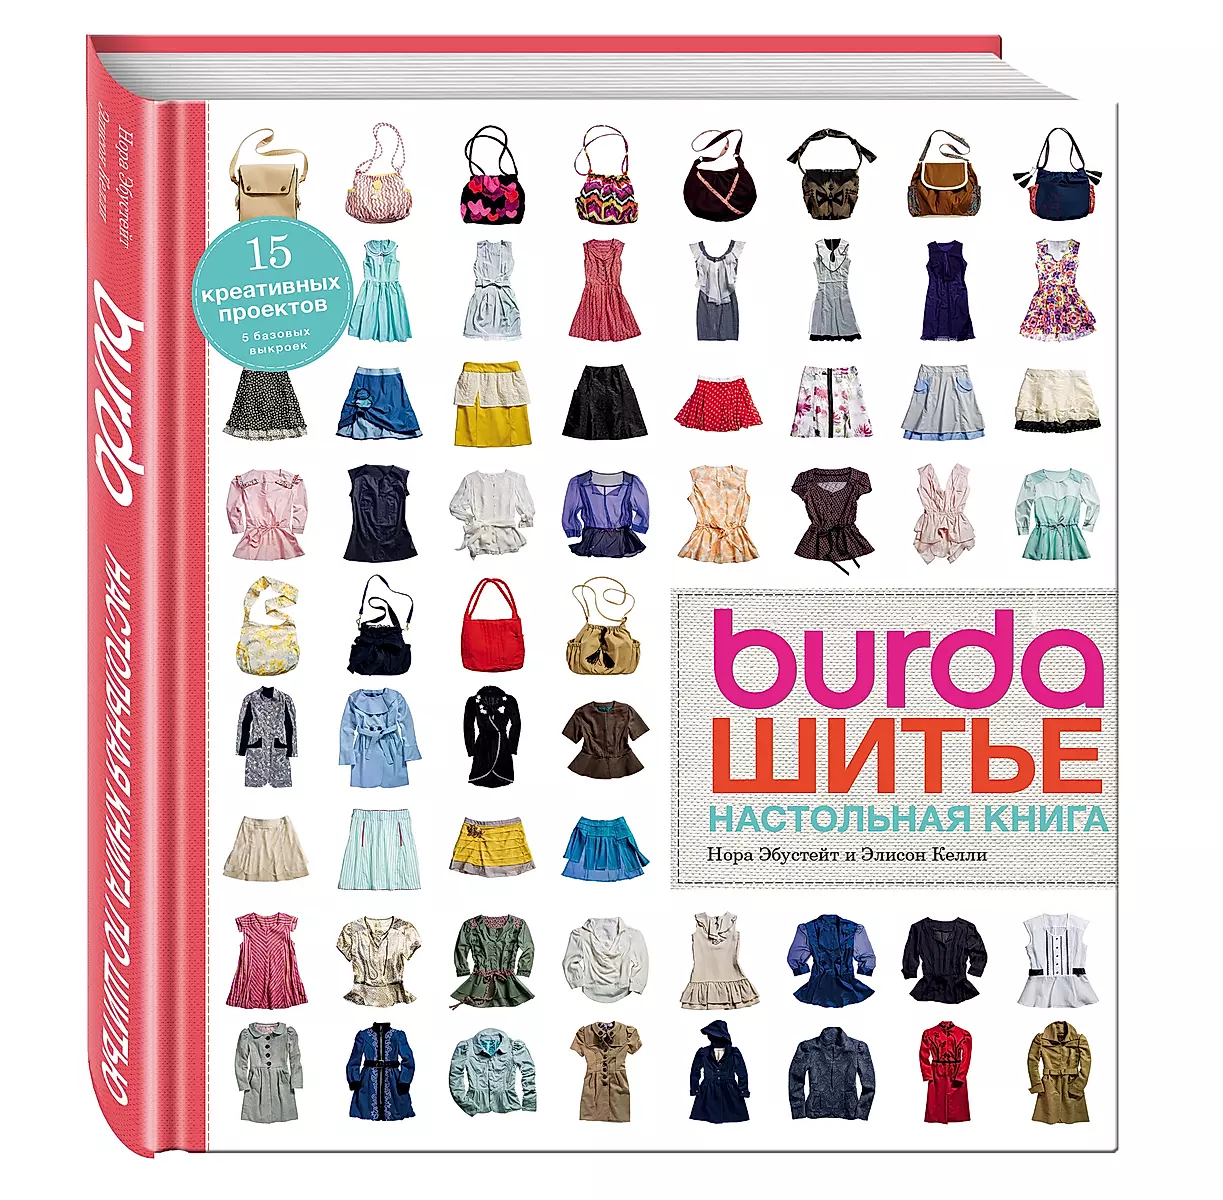 Журнал Burda | VK